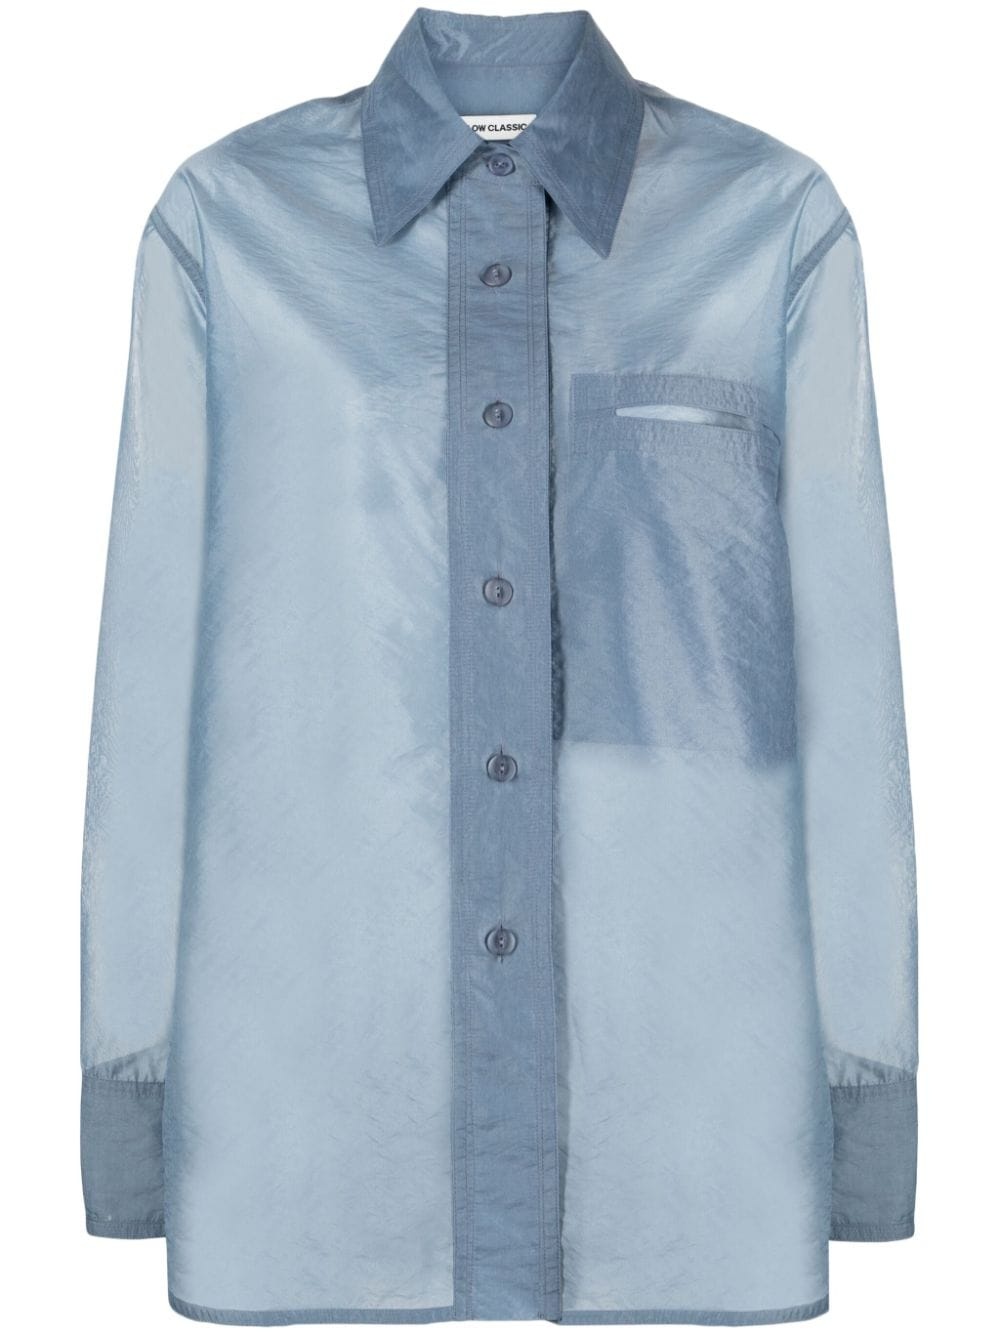 semi-sheer buttoned shirt - 1